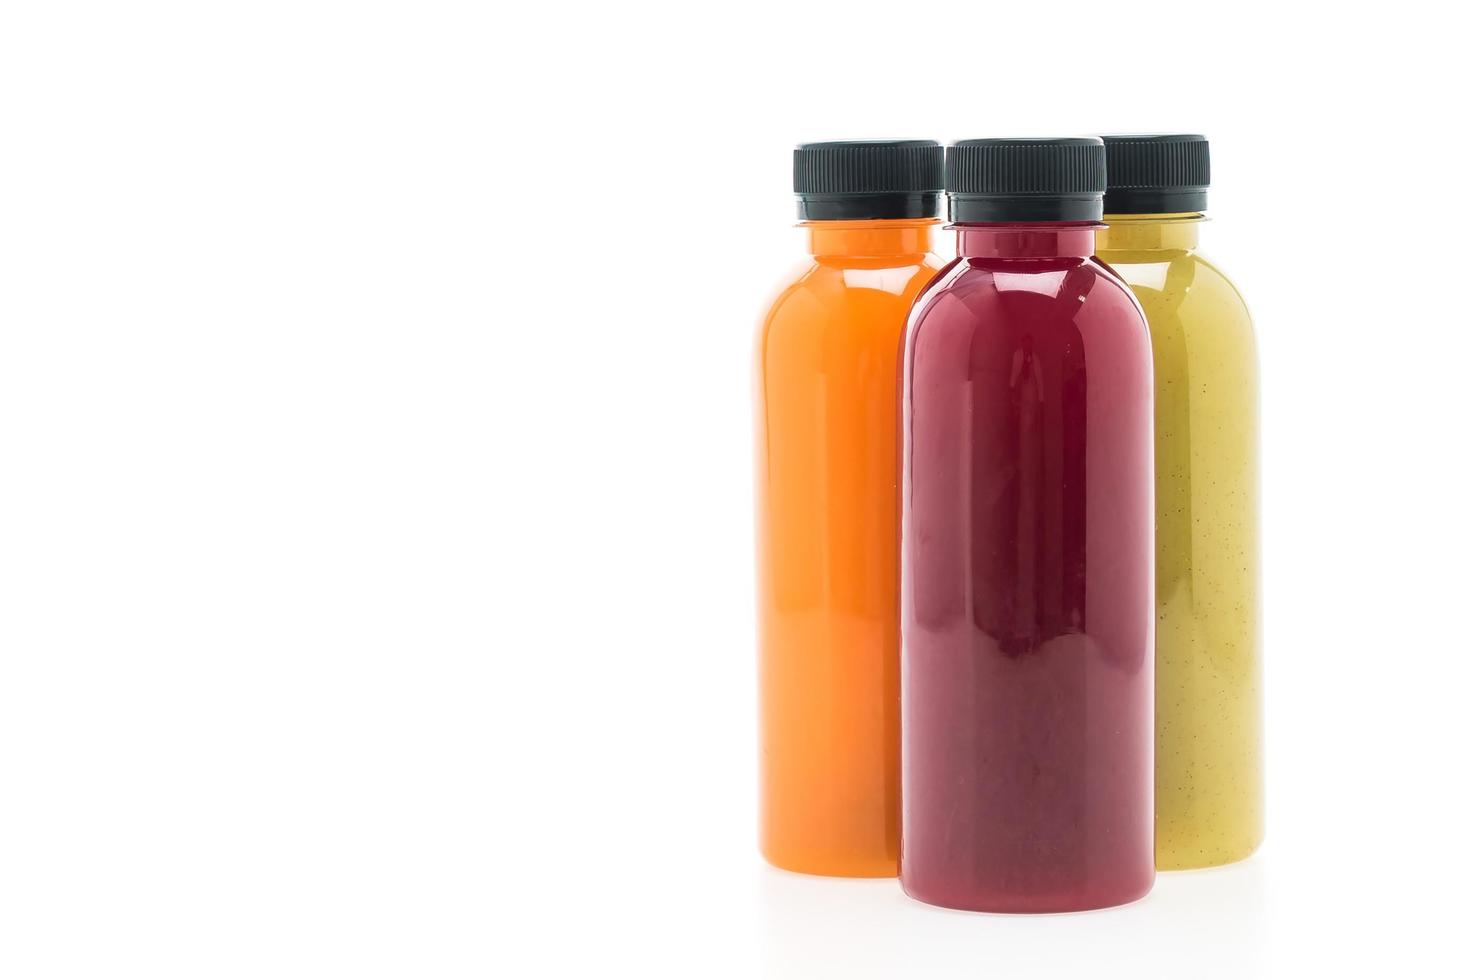 Fruit and vegetable juice bottles isolated on white background photo